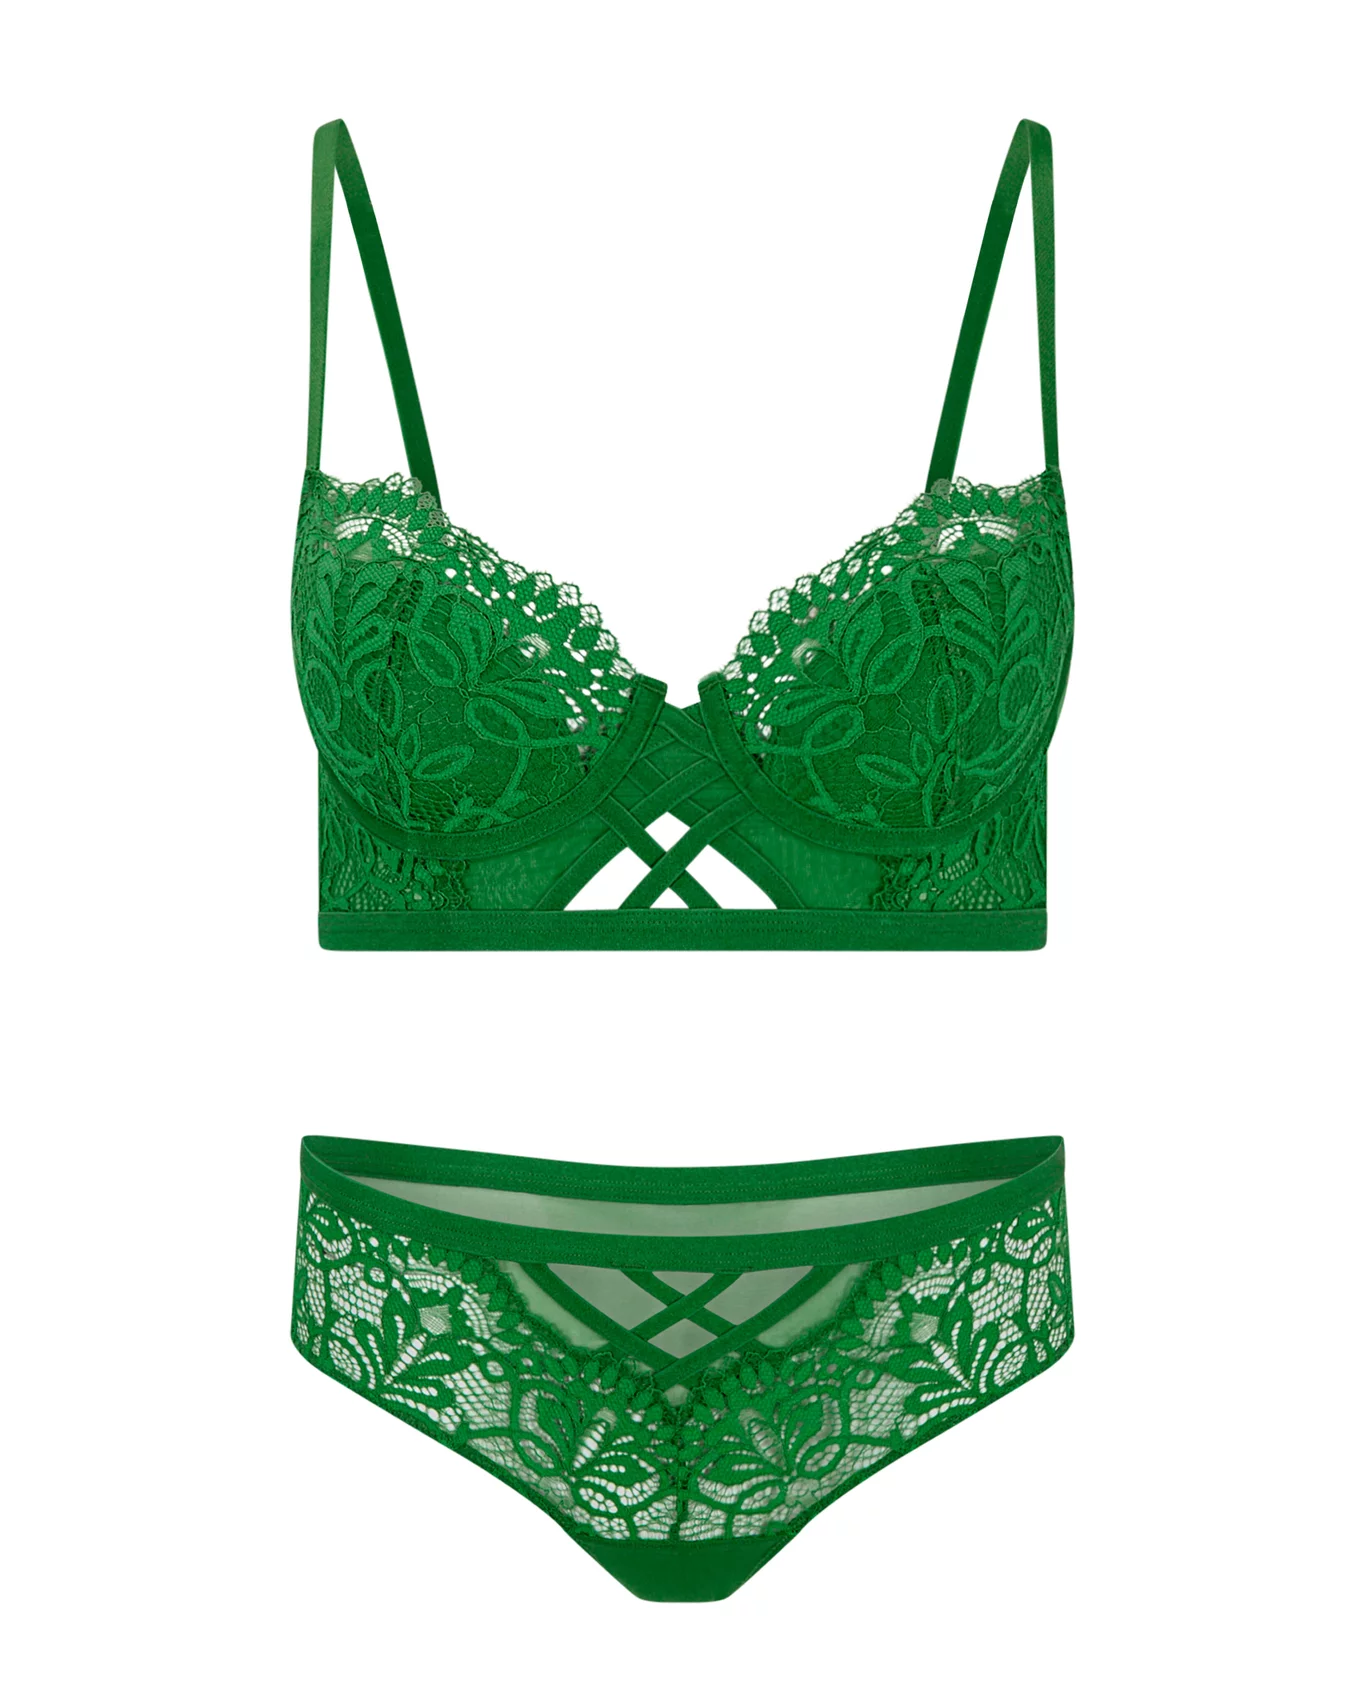 Ladies Secret Treasures nylon underwire bra size 38 DDD color Green